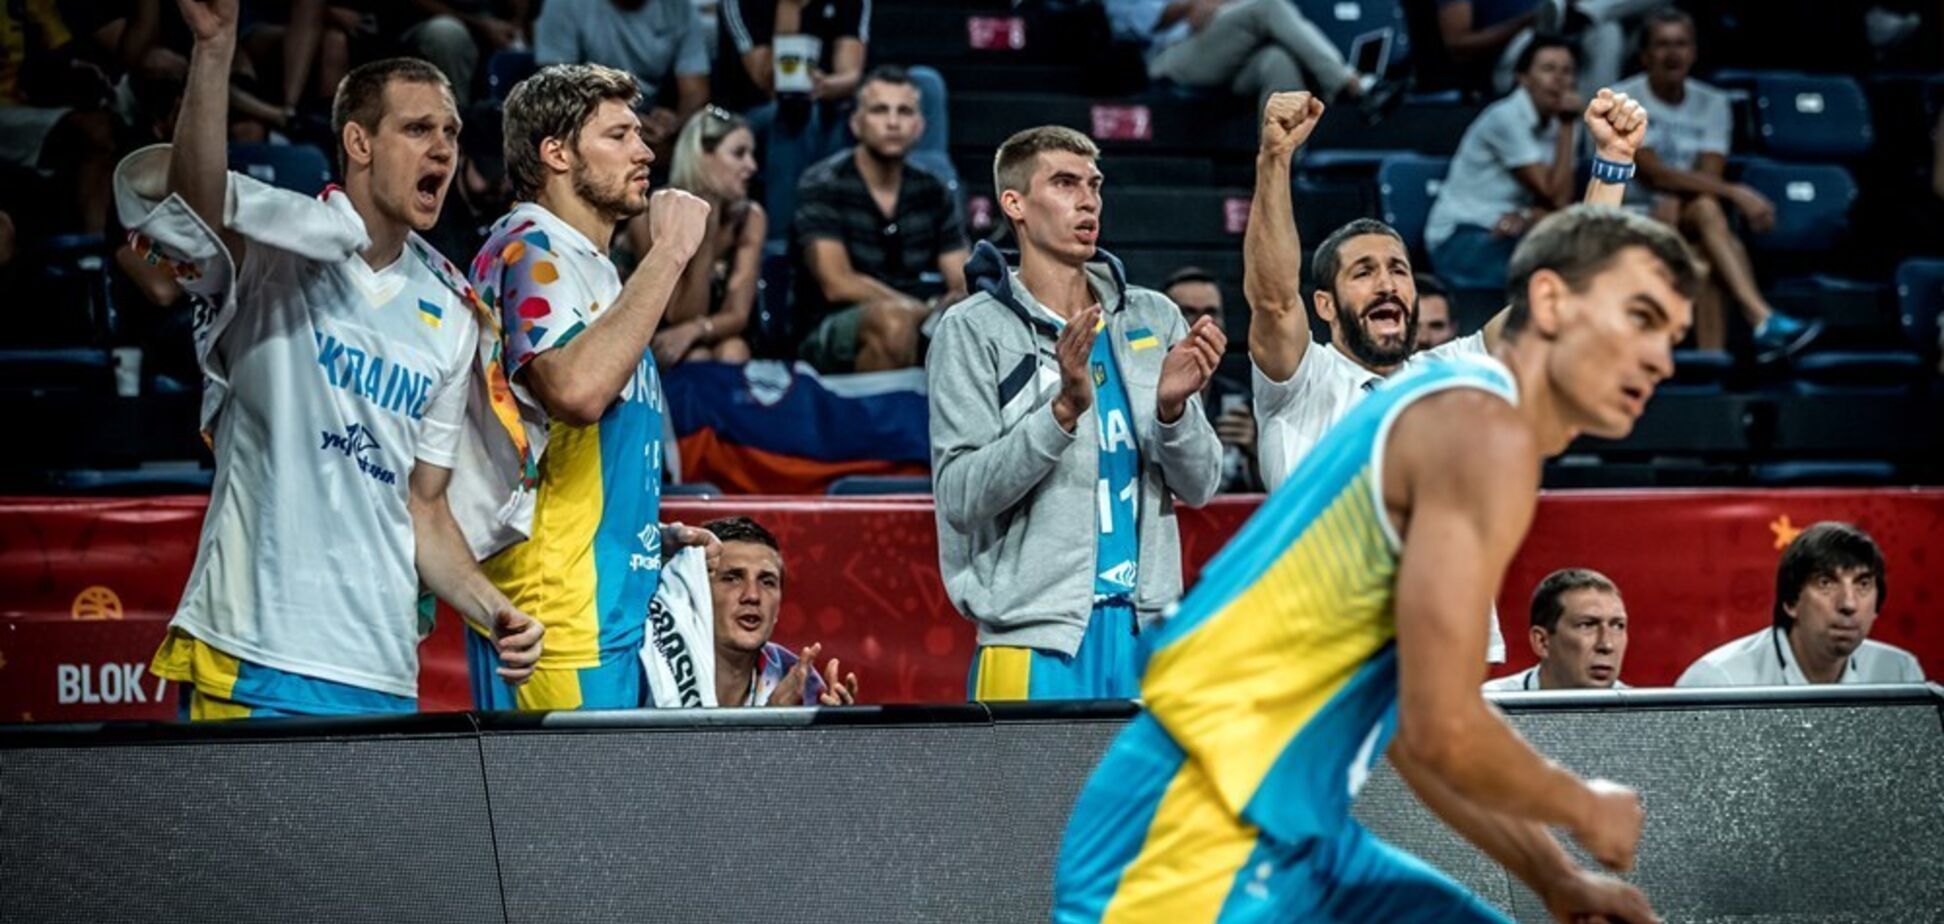 ФБУ выпустила яркое промо матча КМ-2019 Украина - Словения